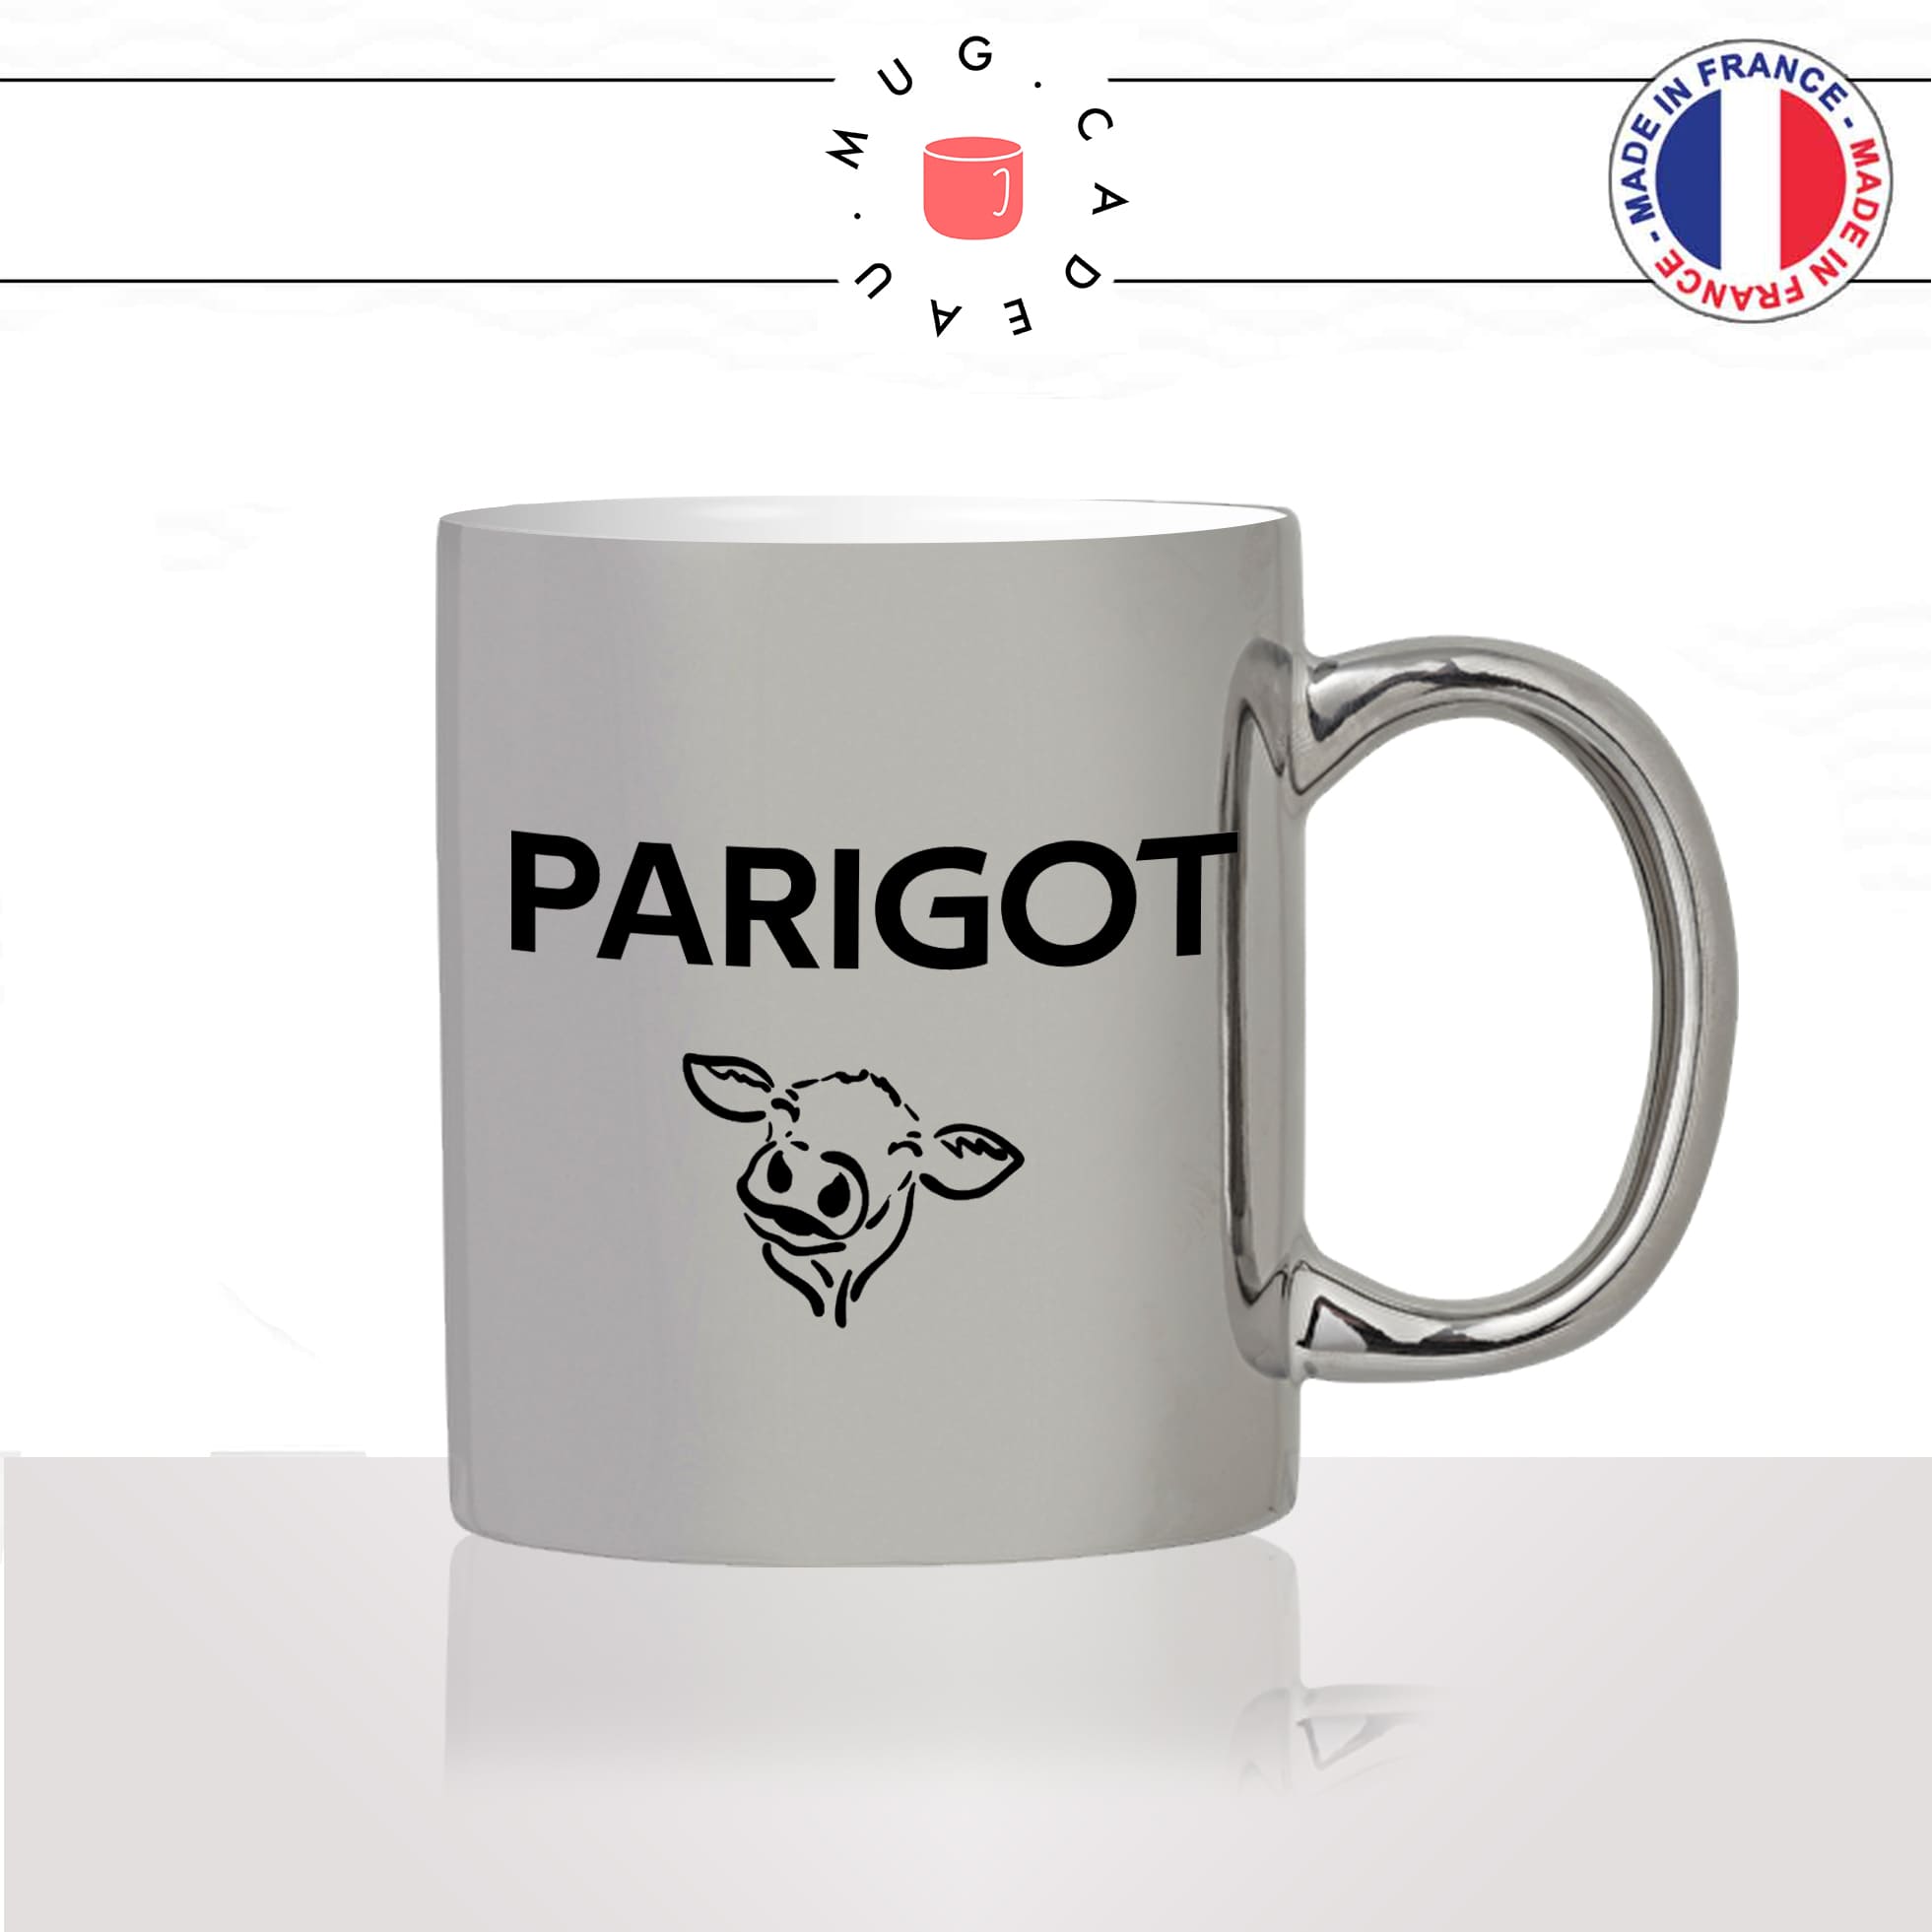 mug-tasse-argent-argenté-silver-gris-parisien-tete-de-chien-parigot-tete-de-veau-citation-paris-francais-france-humour-idée-cadeau-originale-fun2